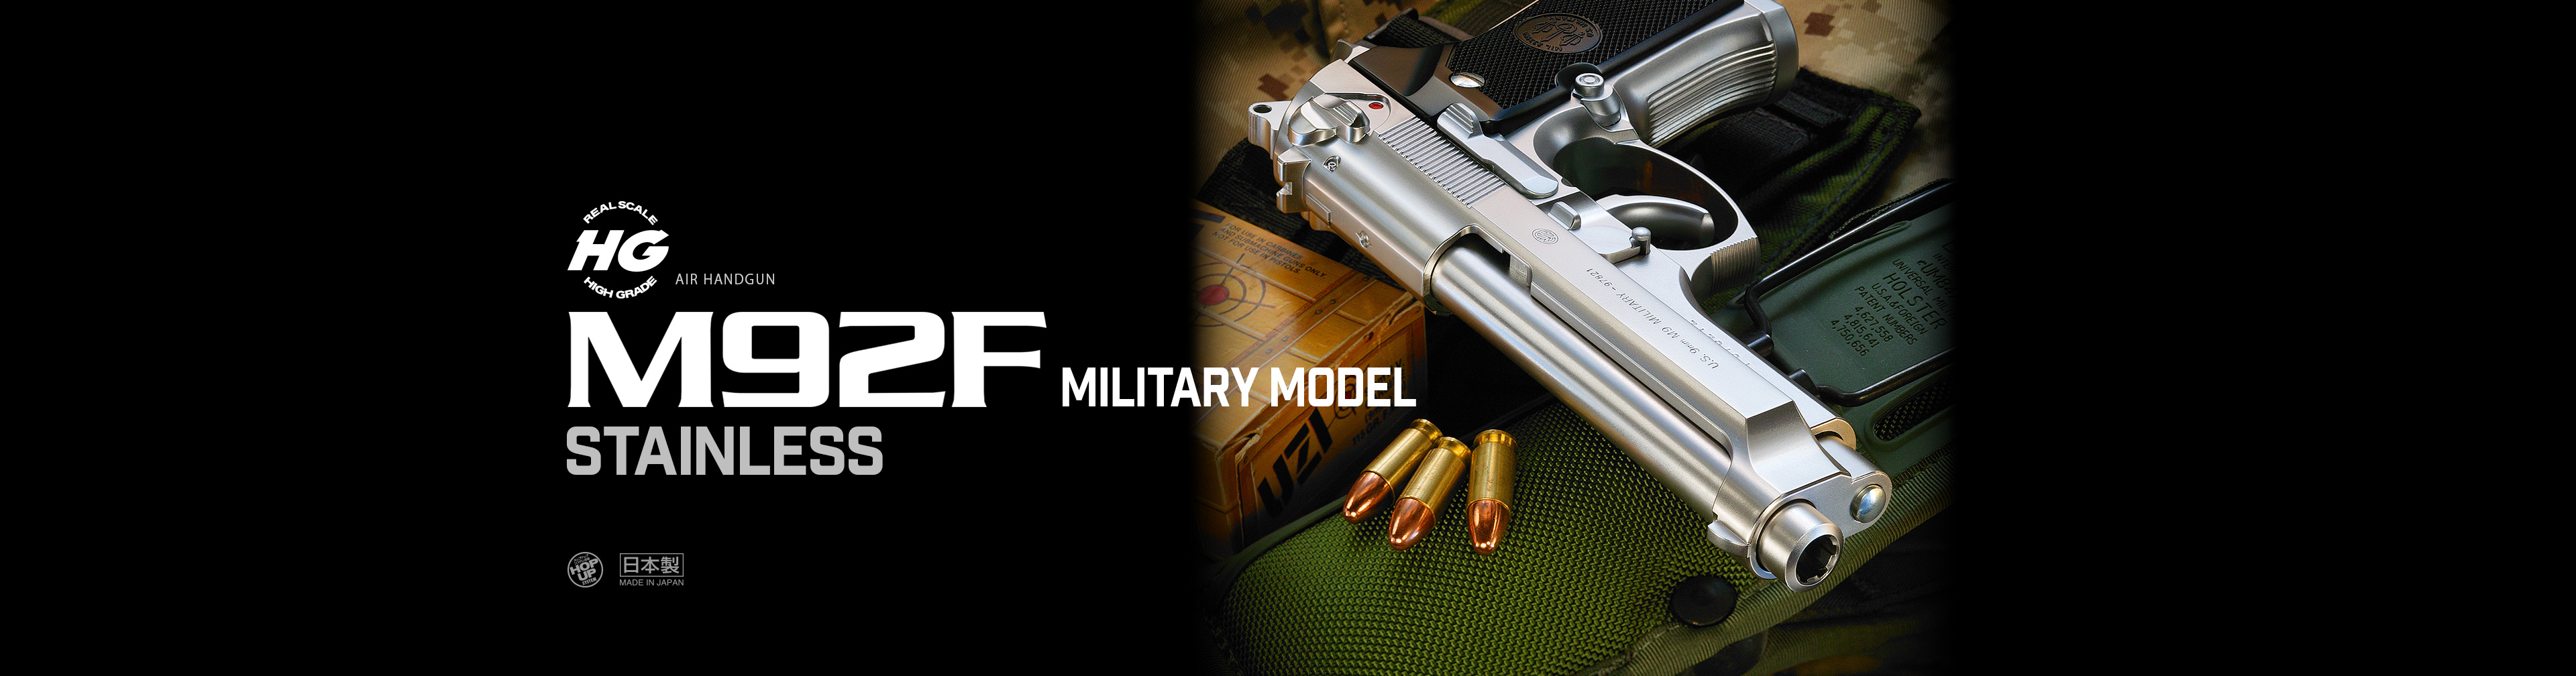 M92F ミリタリーモデル ステンレス【ハイグレード/ホップアップ